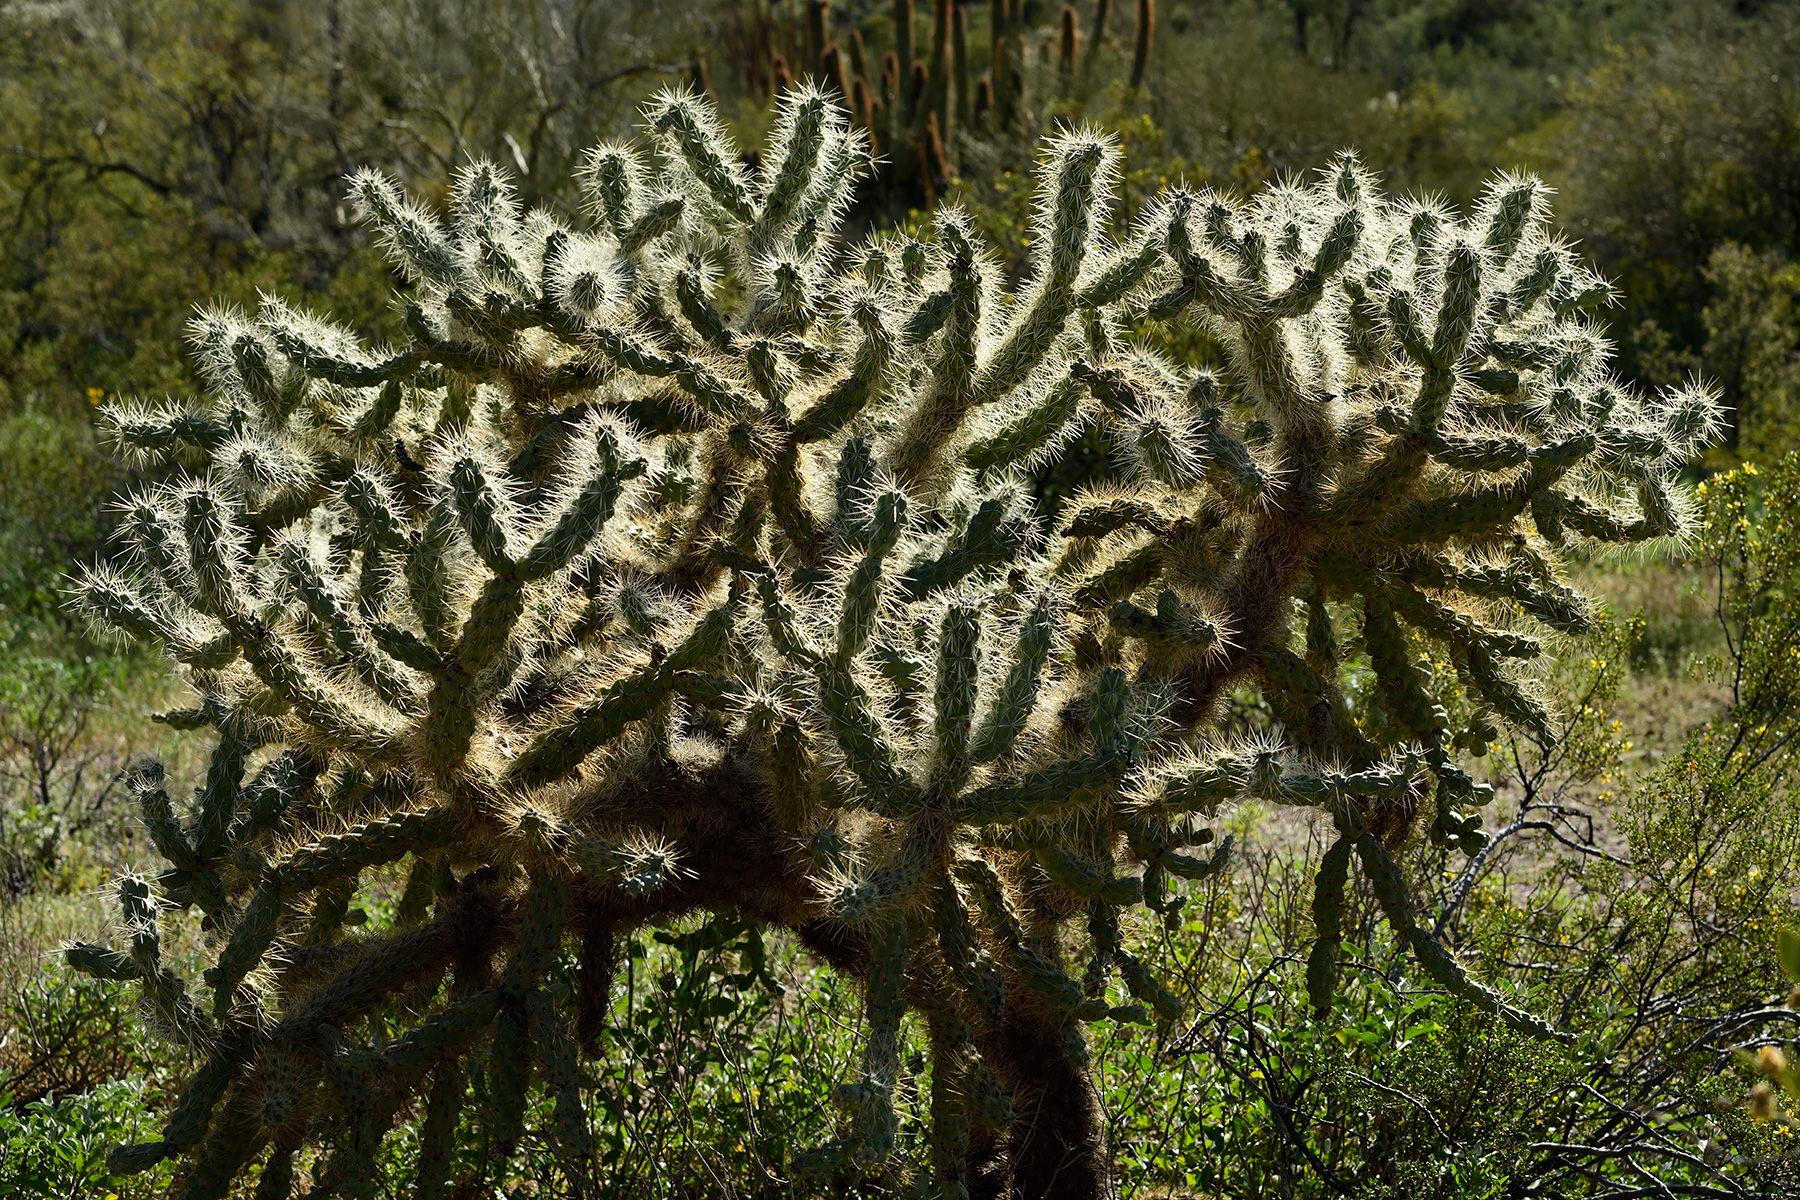 Parc National de Organ Pipe Cactus (Arizona, USA) - Cactus "Chainfruit cholla" en contre-jour